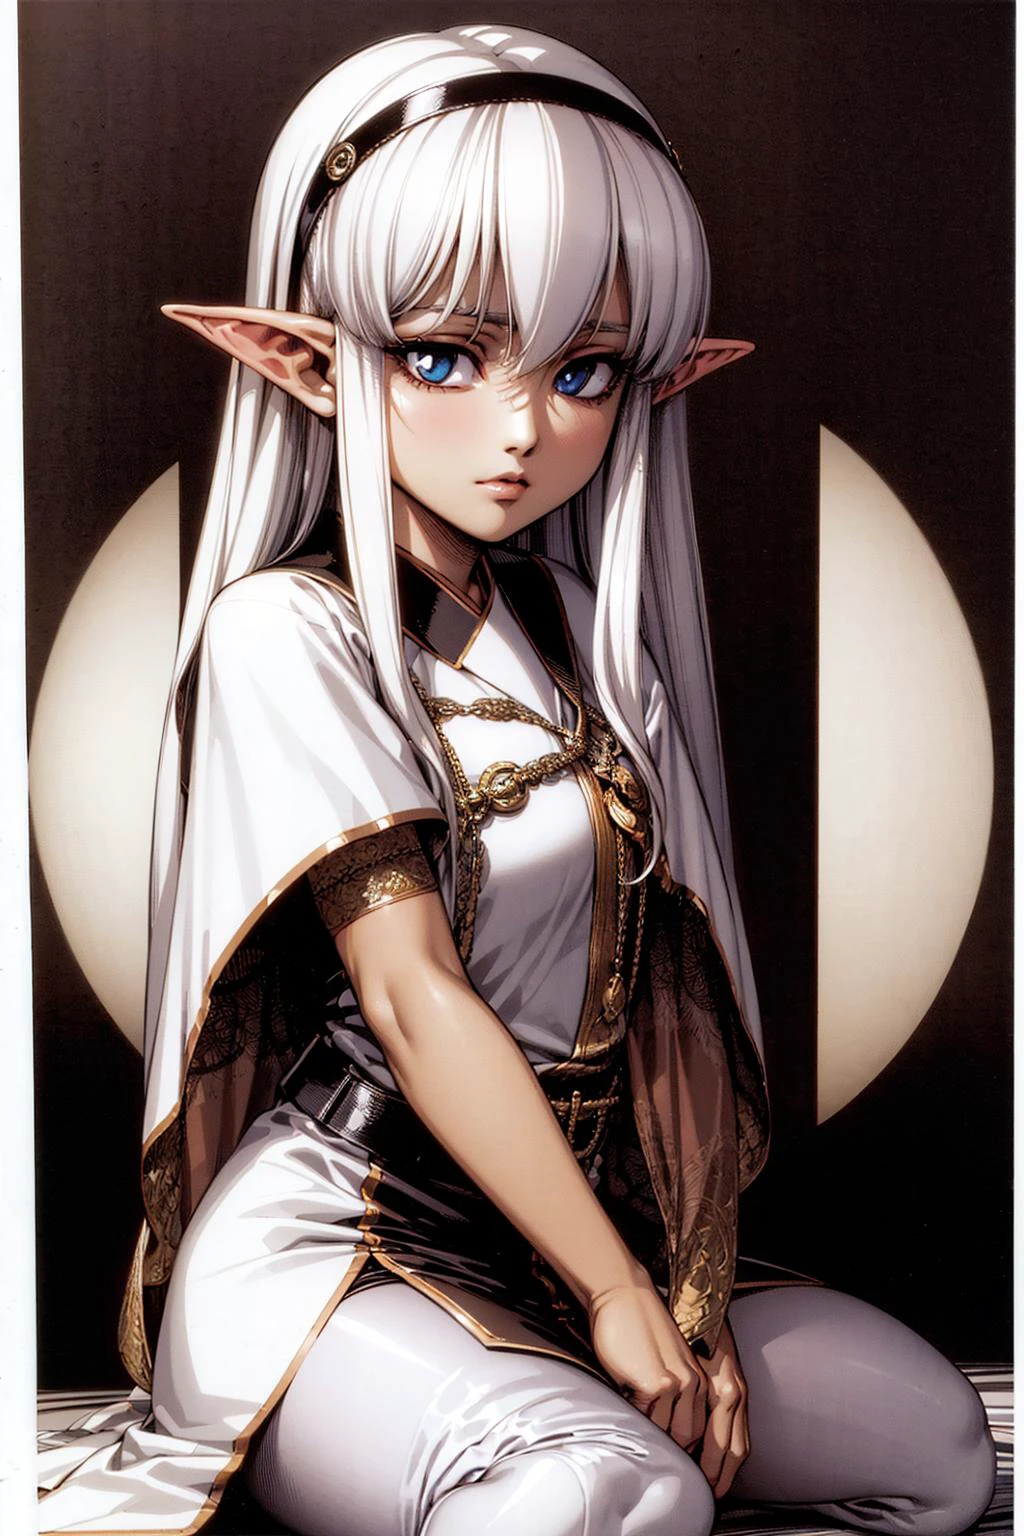 (urushihara satoshi), 1 garota, sacerdotisa, orelhas de elfo, cabelo branco, olhos azuis, arte por (Becky Cloonan:1.3), 